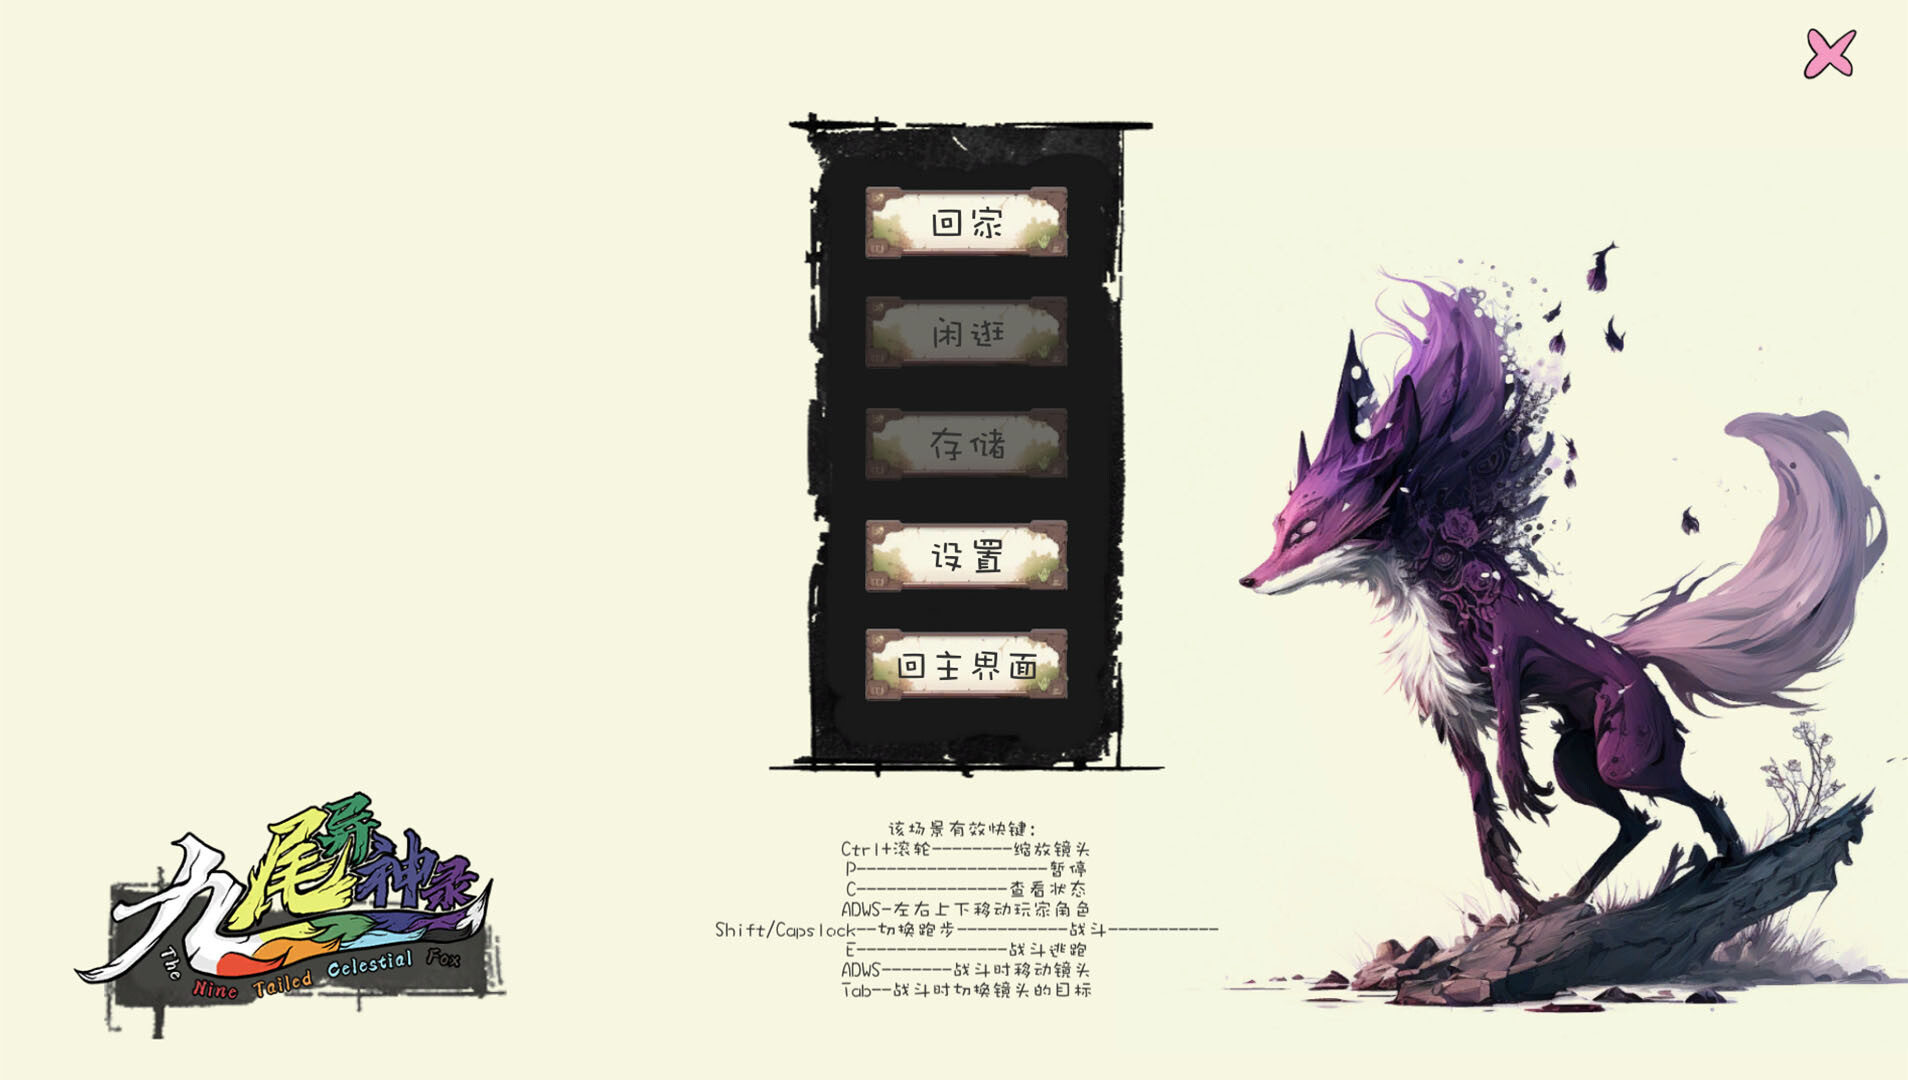 《九尾异神录(The Nine Tailed Celestial Fox)》|中文|免安装硬盘版